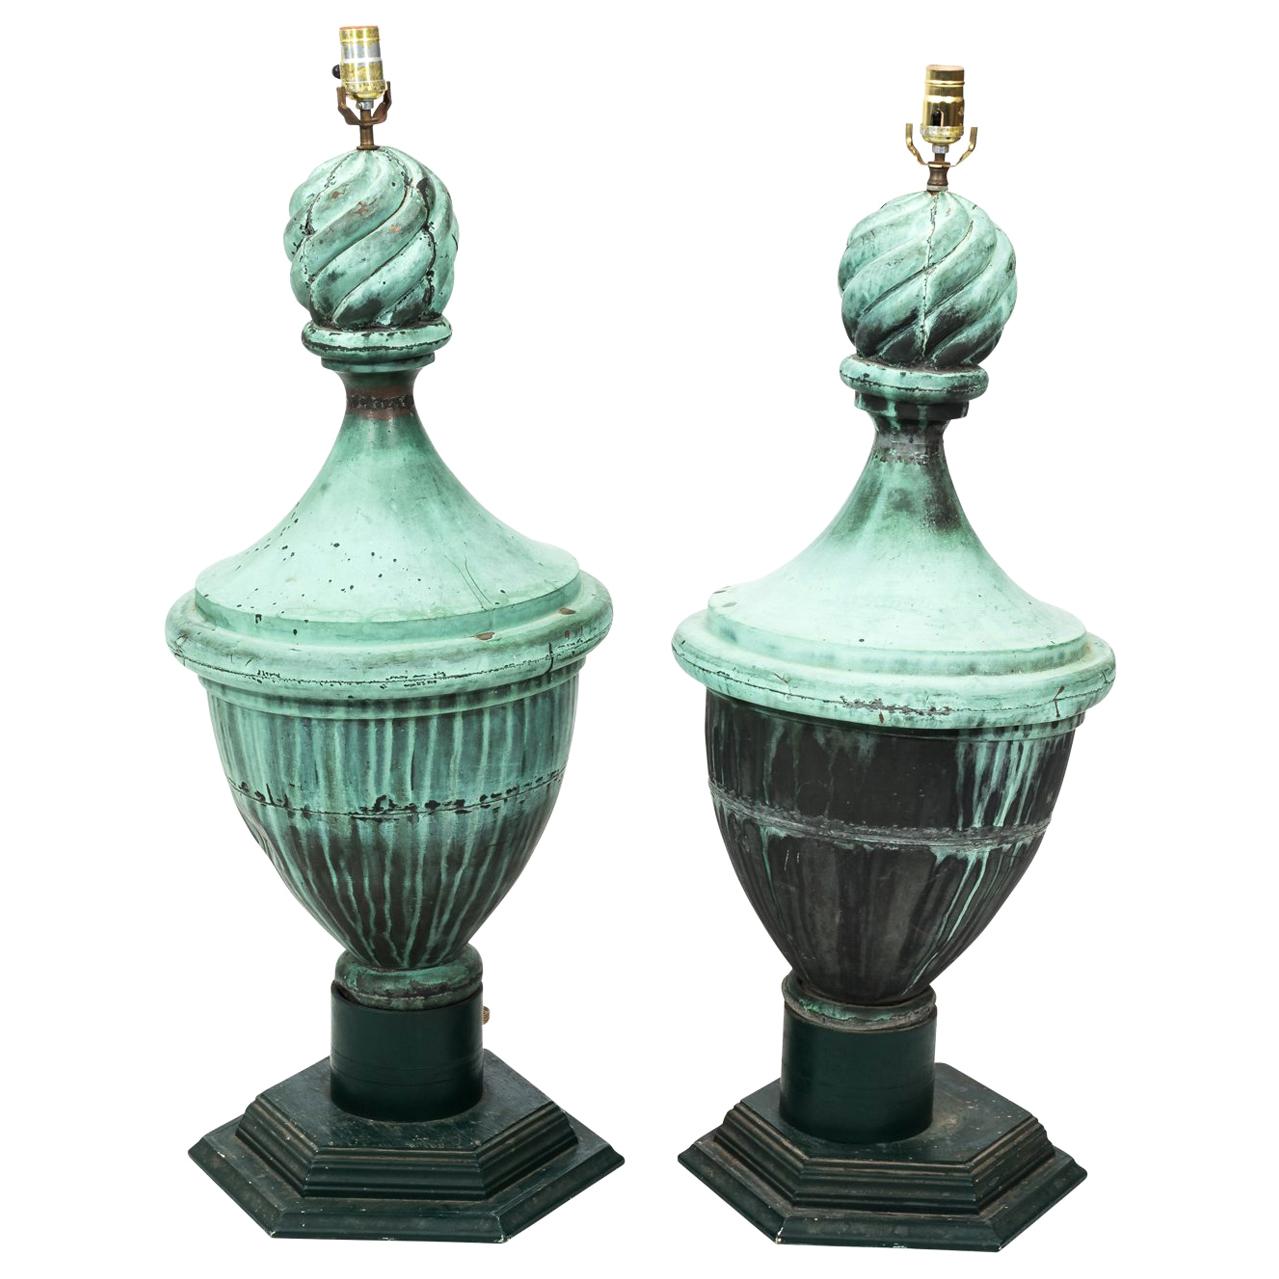 Pair of Copper Neoclassical Urn Finial Lamps, circa 1890